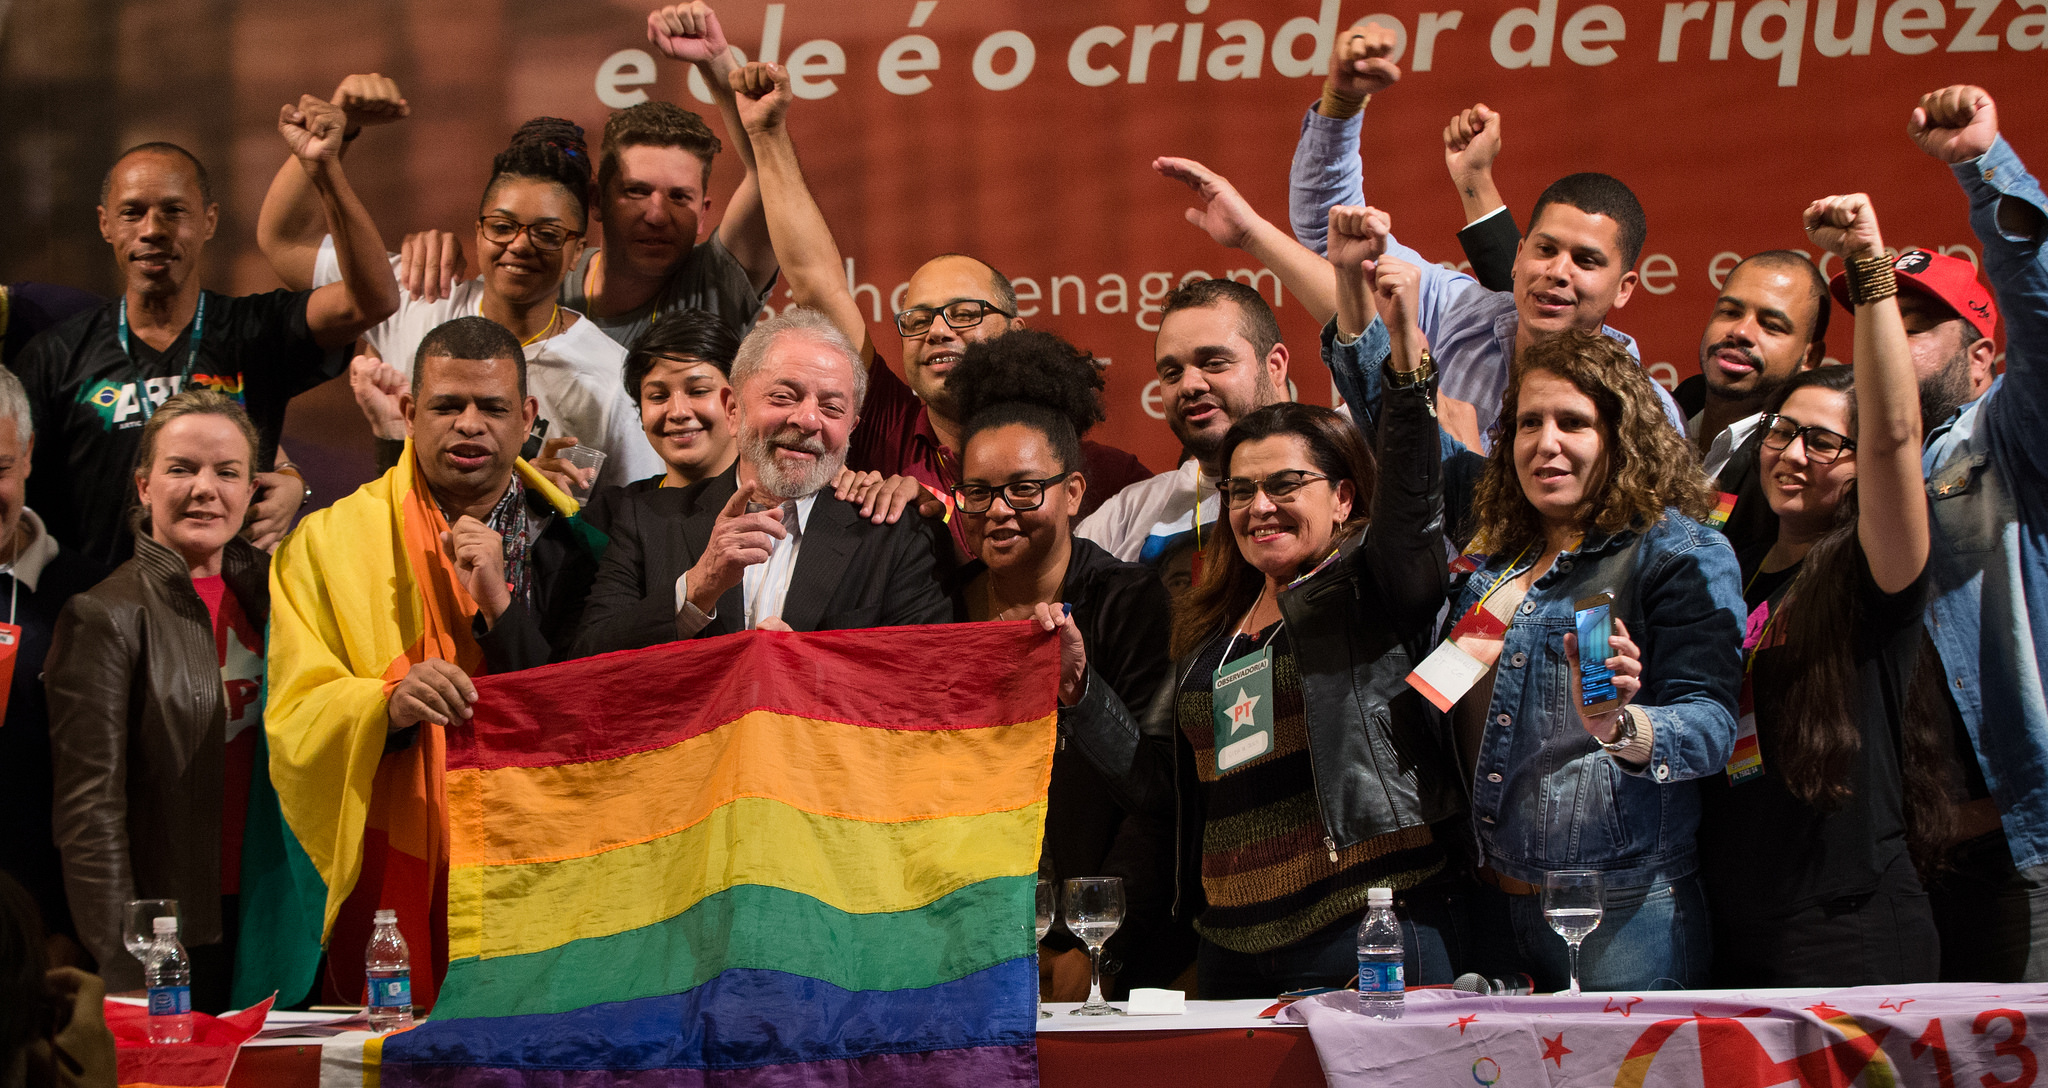 Visibilidade lésbica: “Lutamos contra o retrocesso atual”, diz secretária LGBT